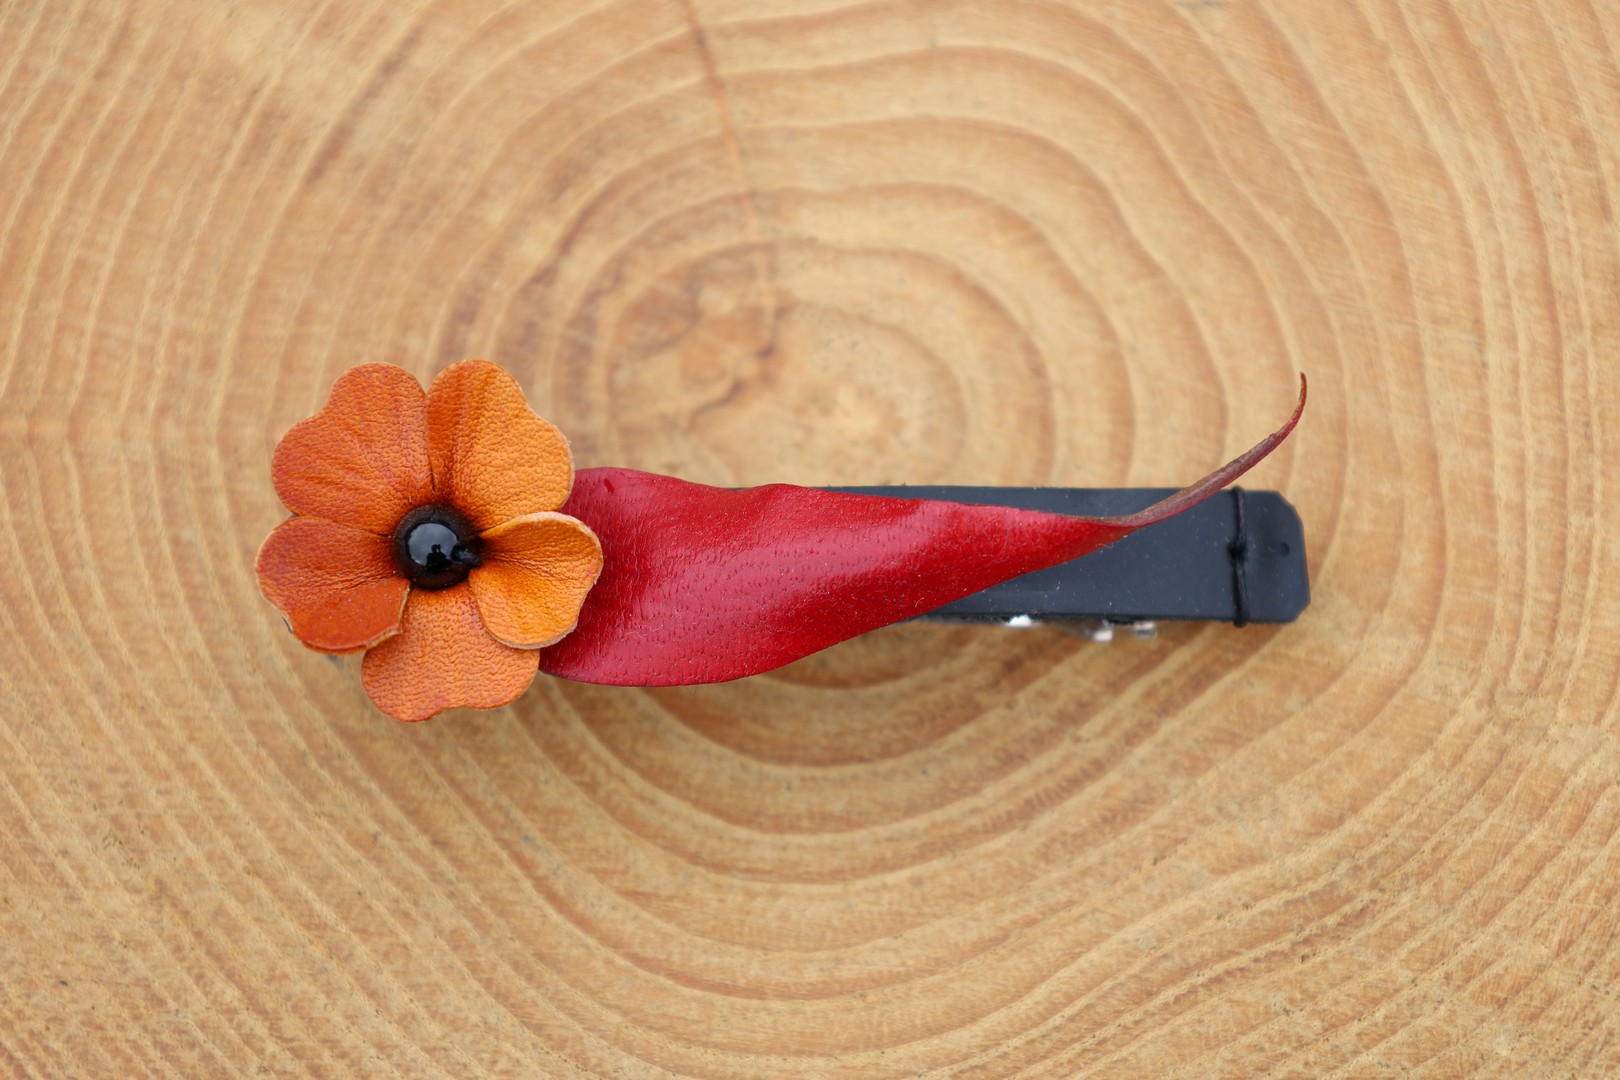 barrette fleur orange feuille rouge fond noir, cuir végétal, l'âge du cuir, maroquinerie artisanale, Dordogne, France